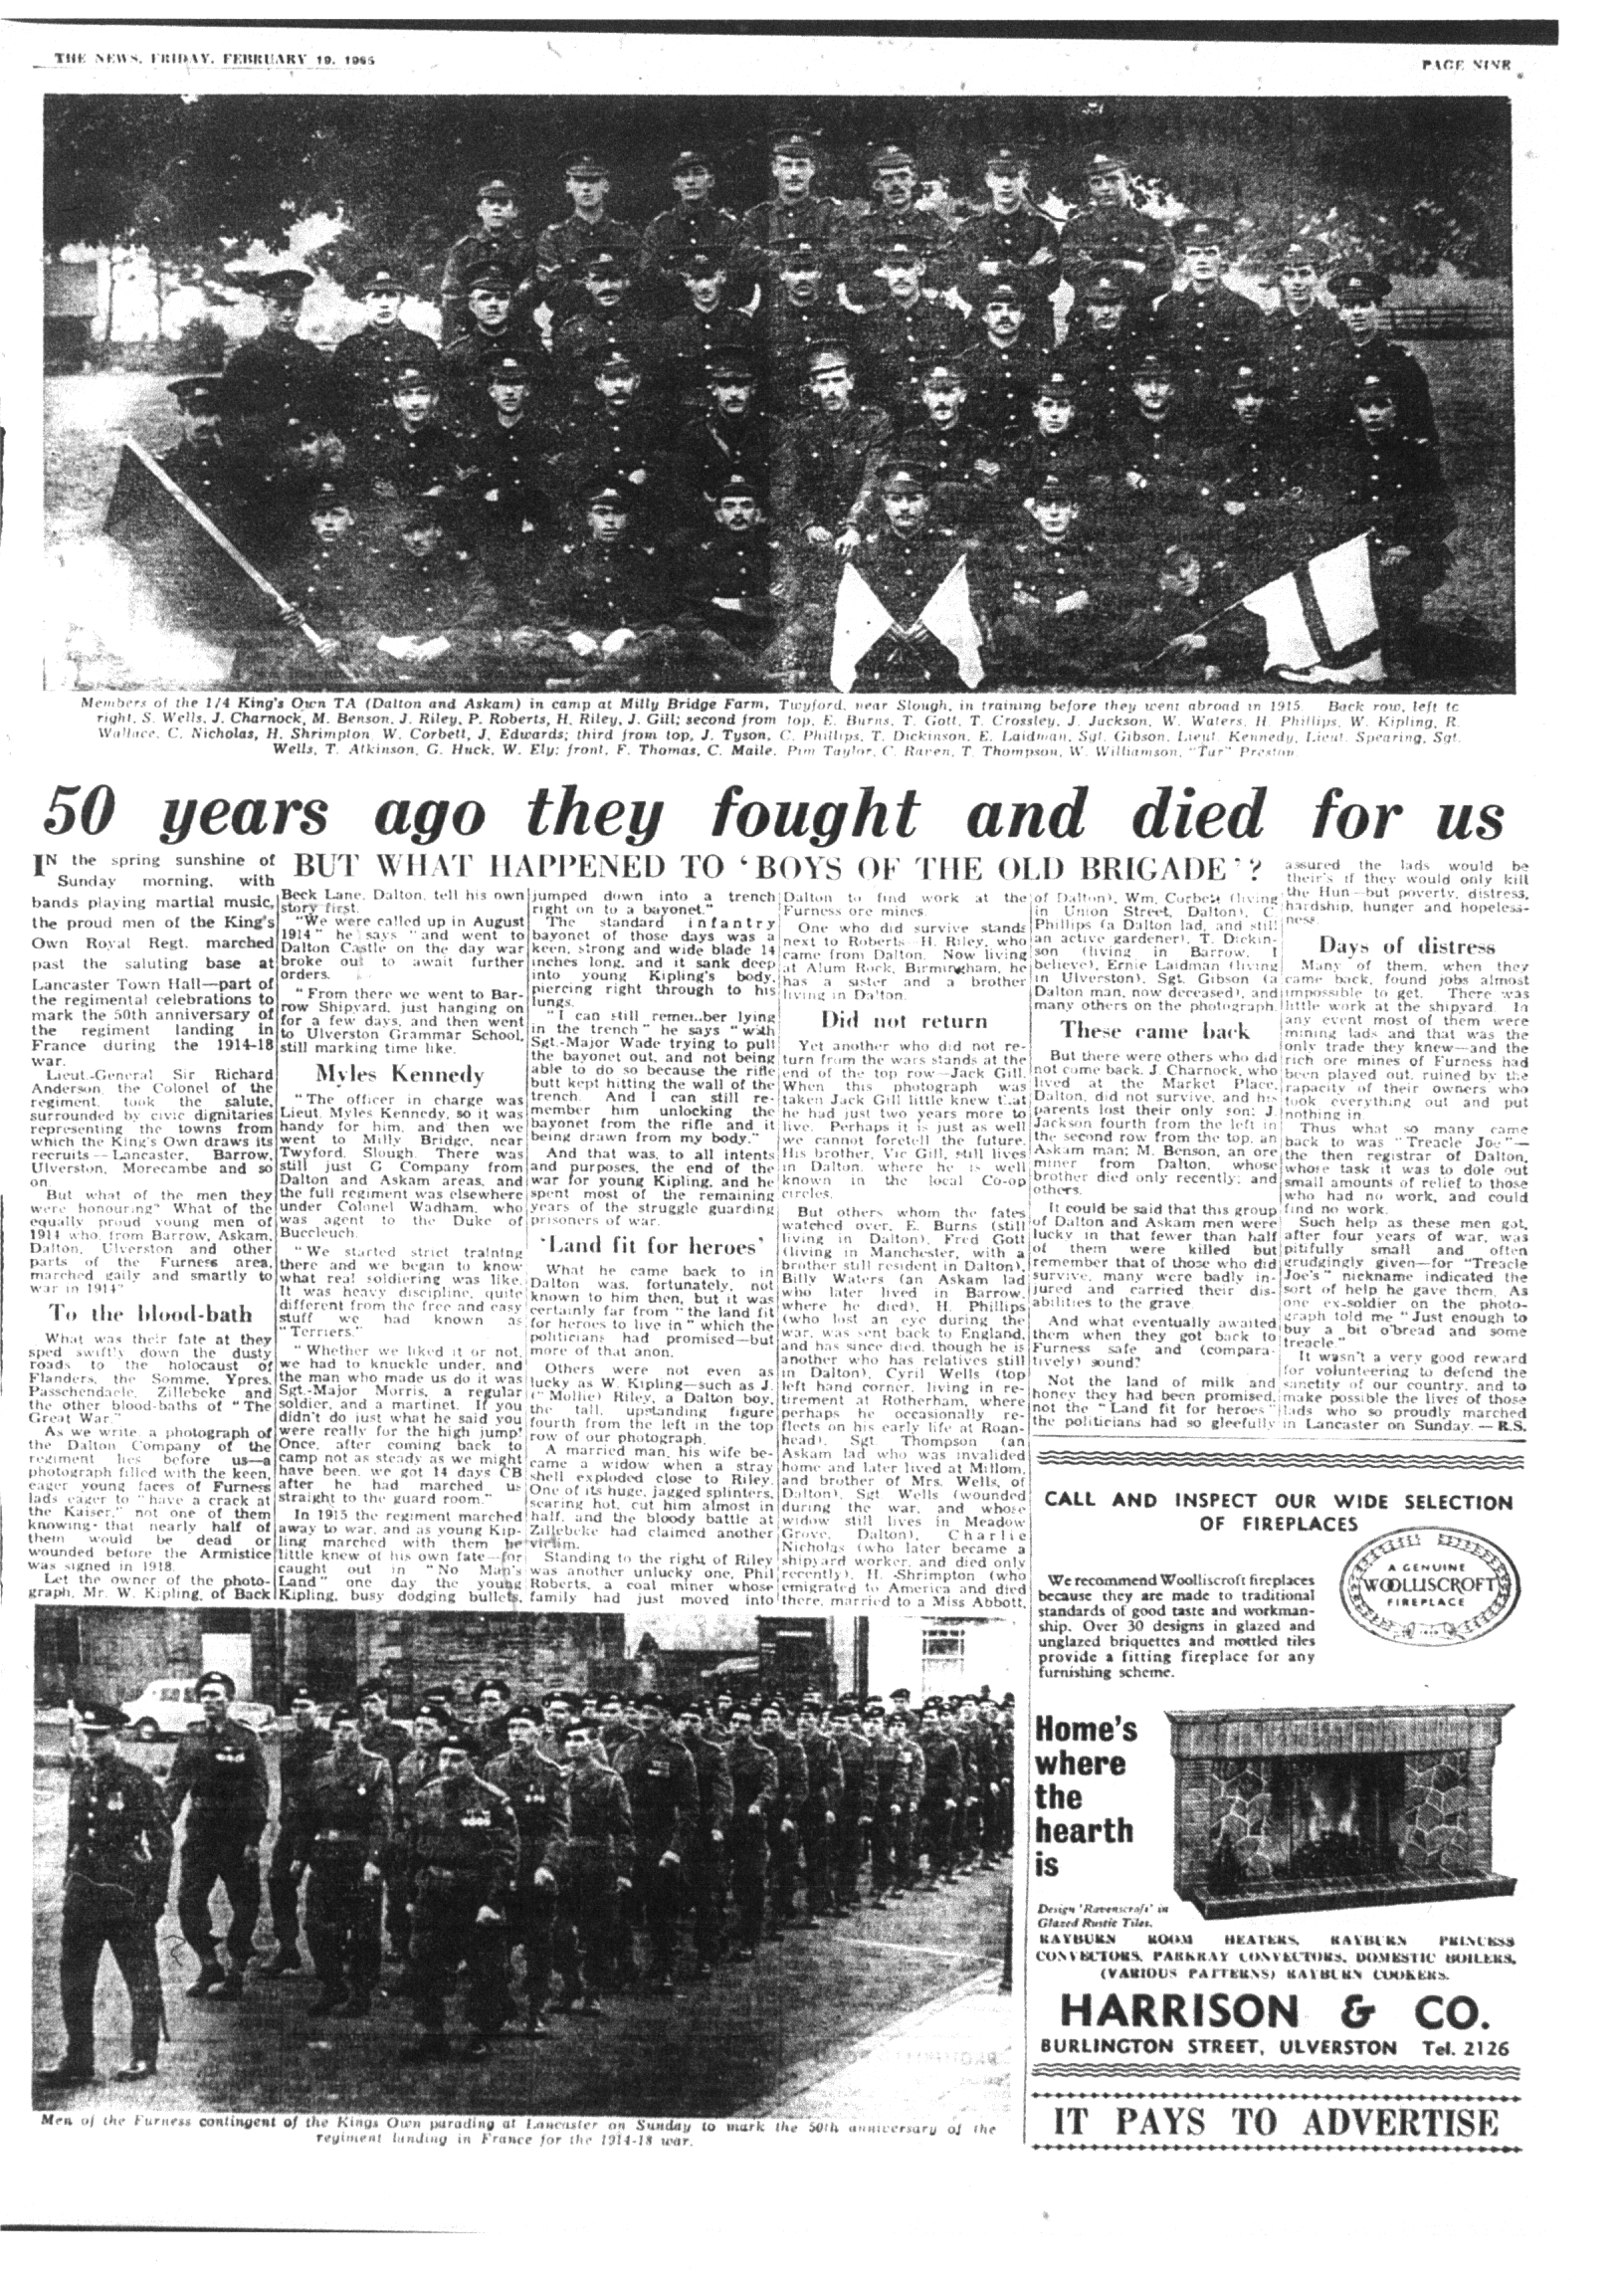 HISTOIRE: Article du 19 février 1965